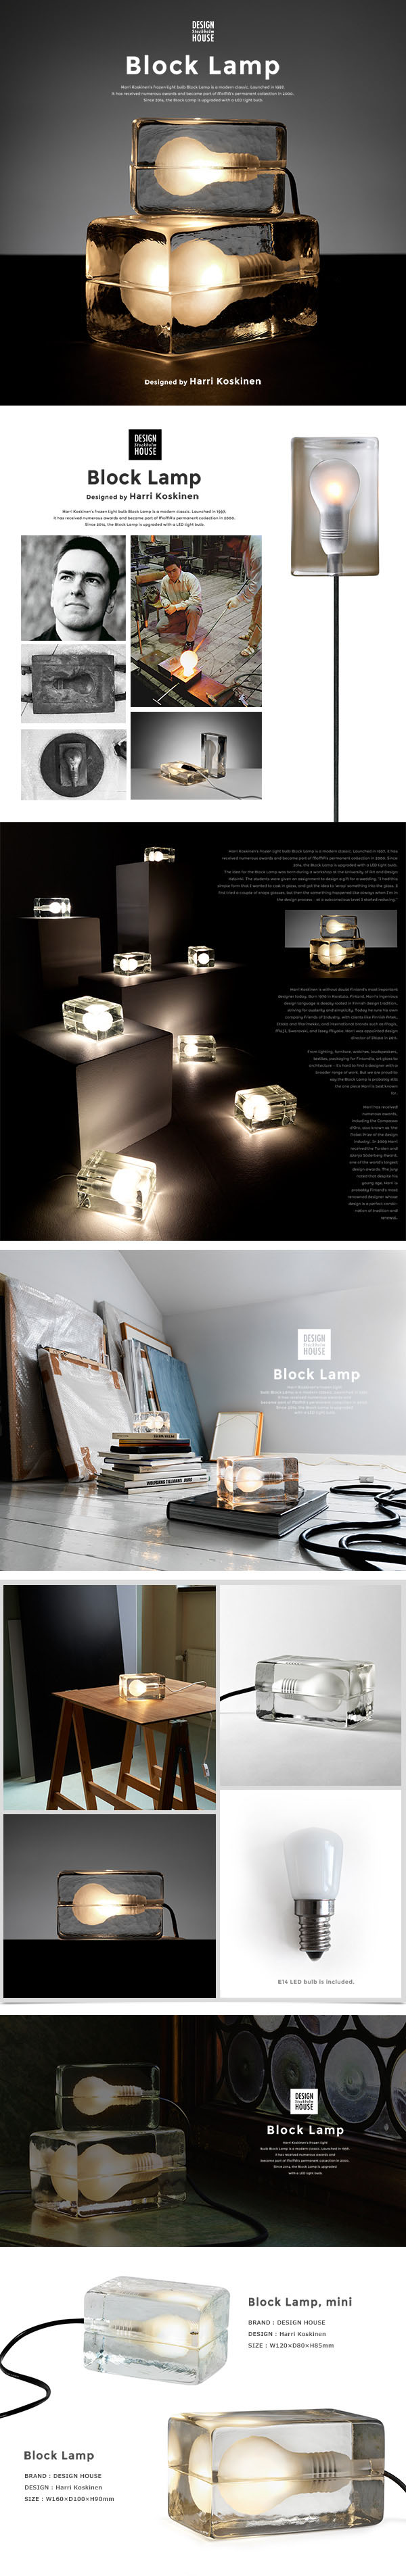 デザインハウス ストックホルム ブロックランプ Lサイズ スモーク DESIGN HOUSE Stockholm BLOCK LAMP - 1